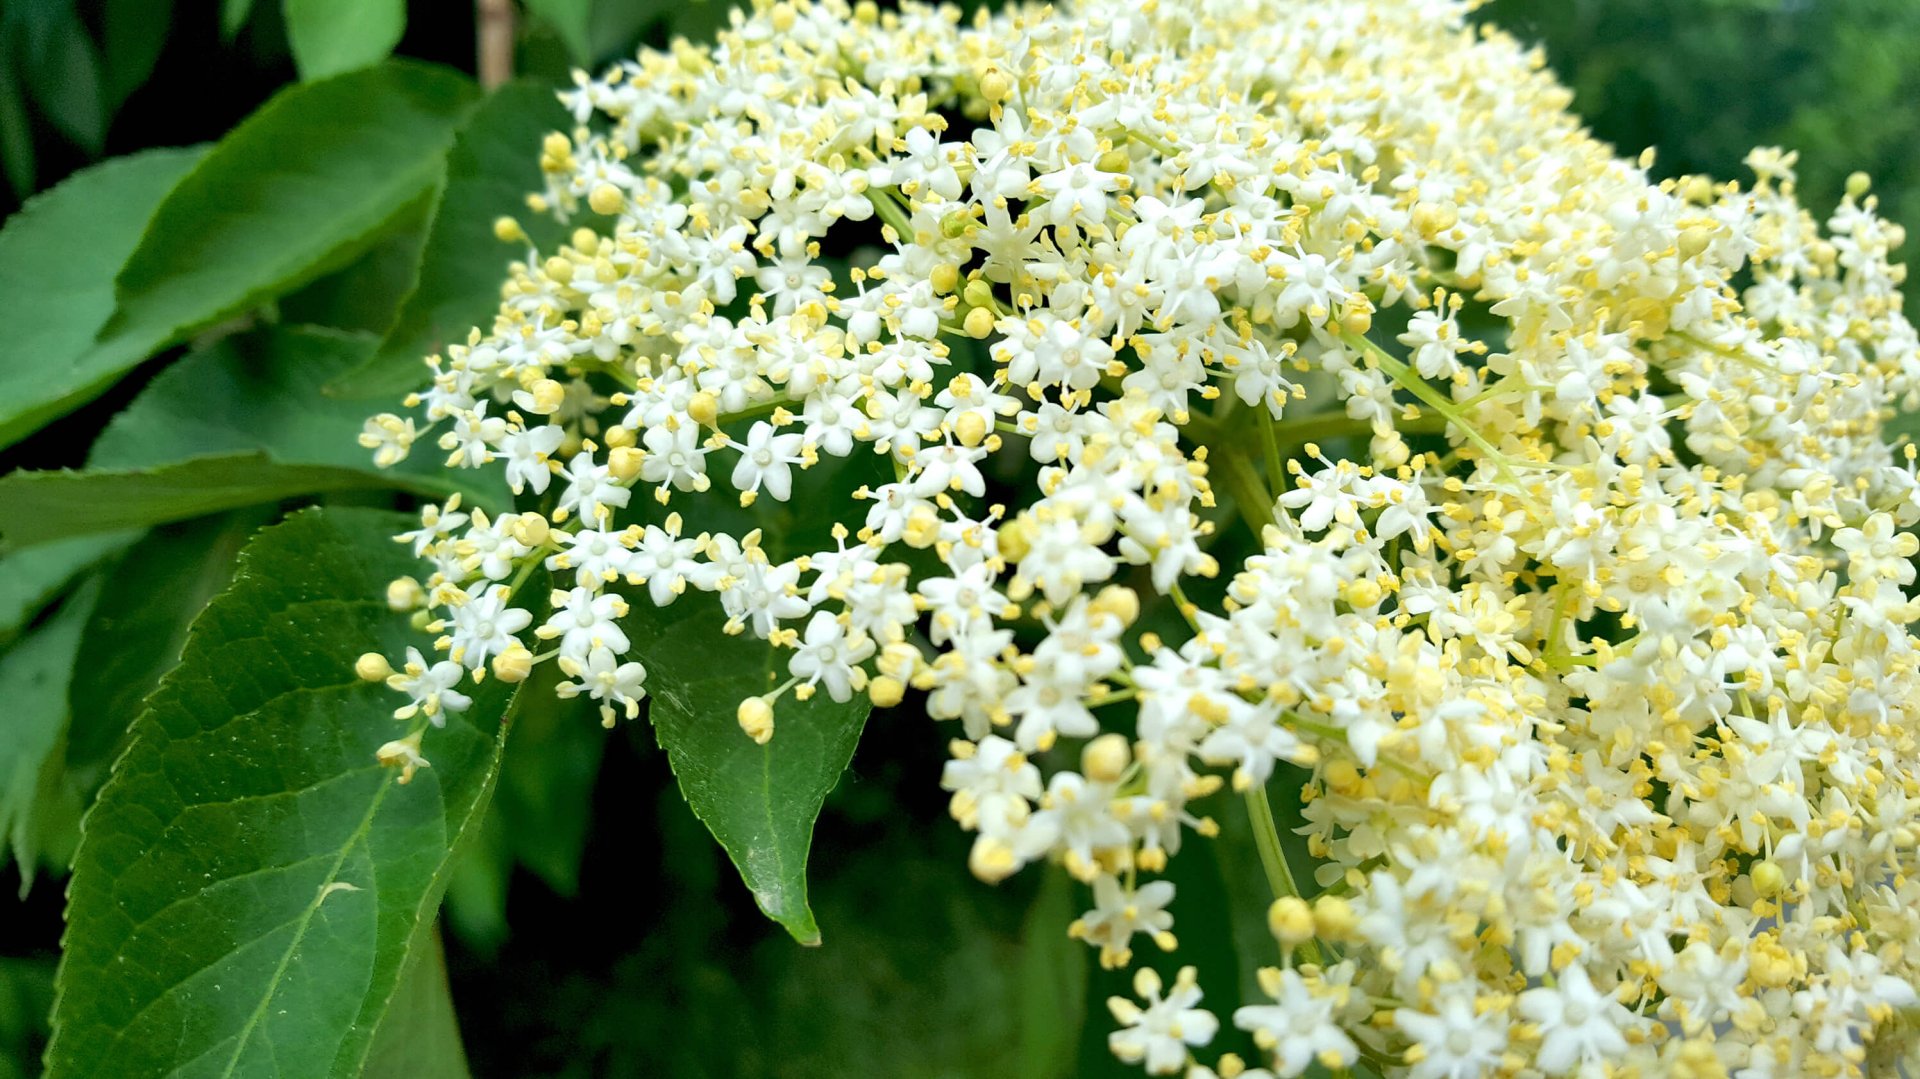 The Irish wildflower, Elder flower